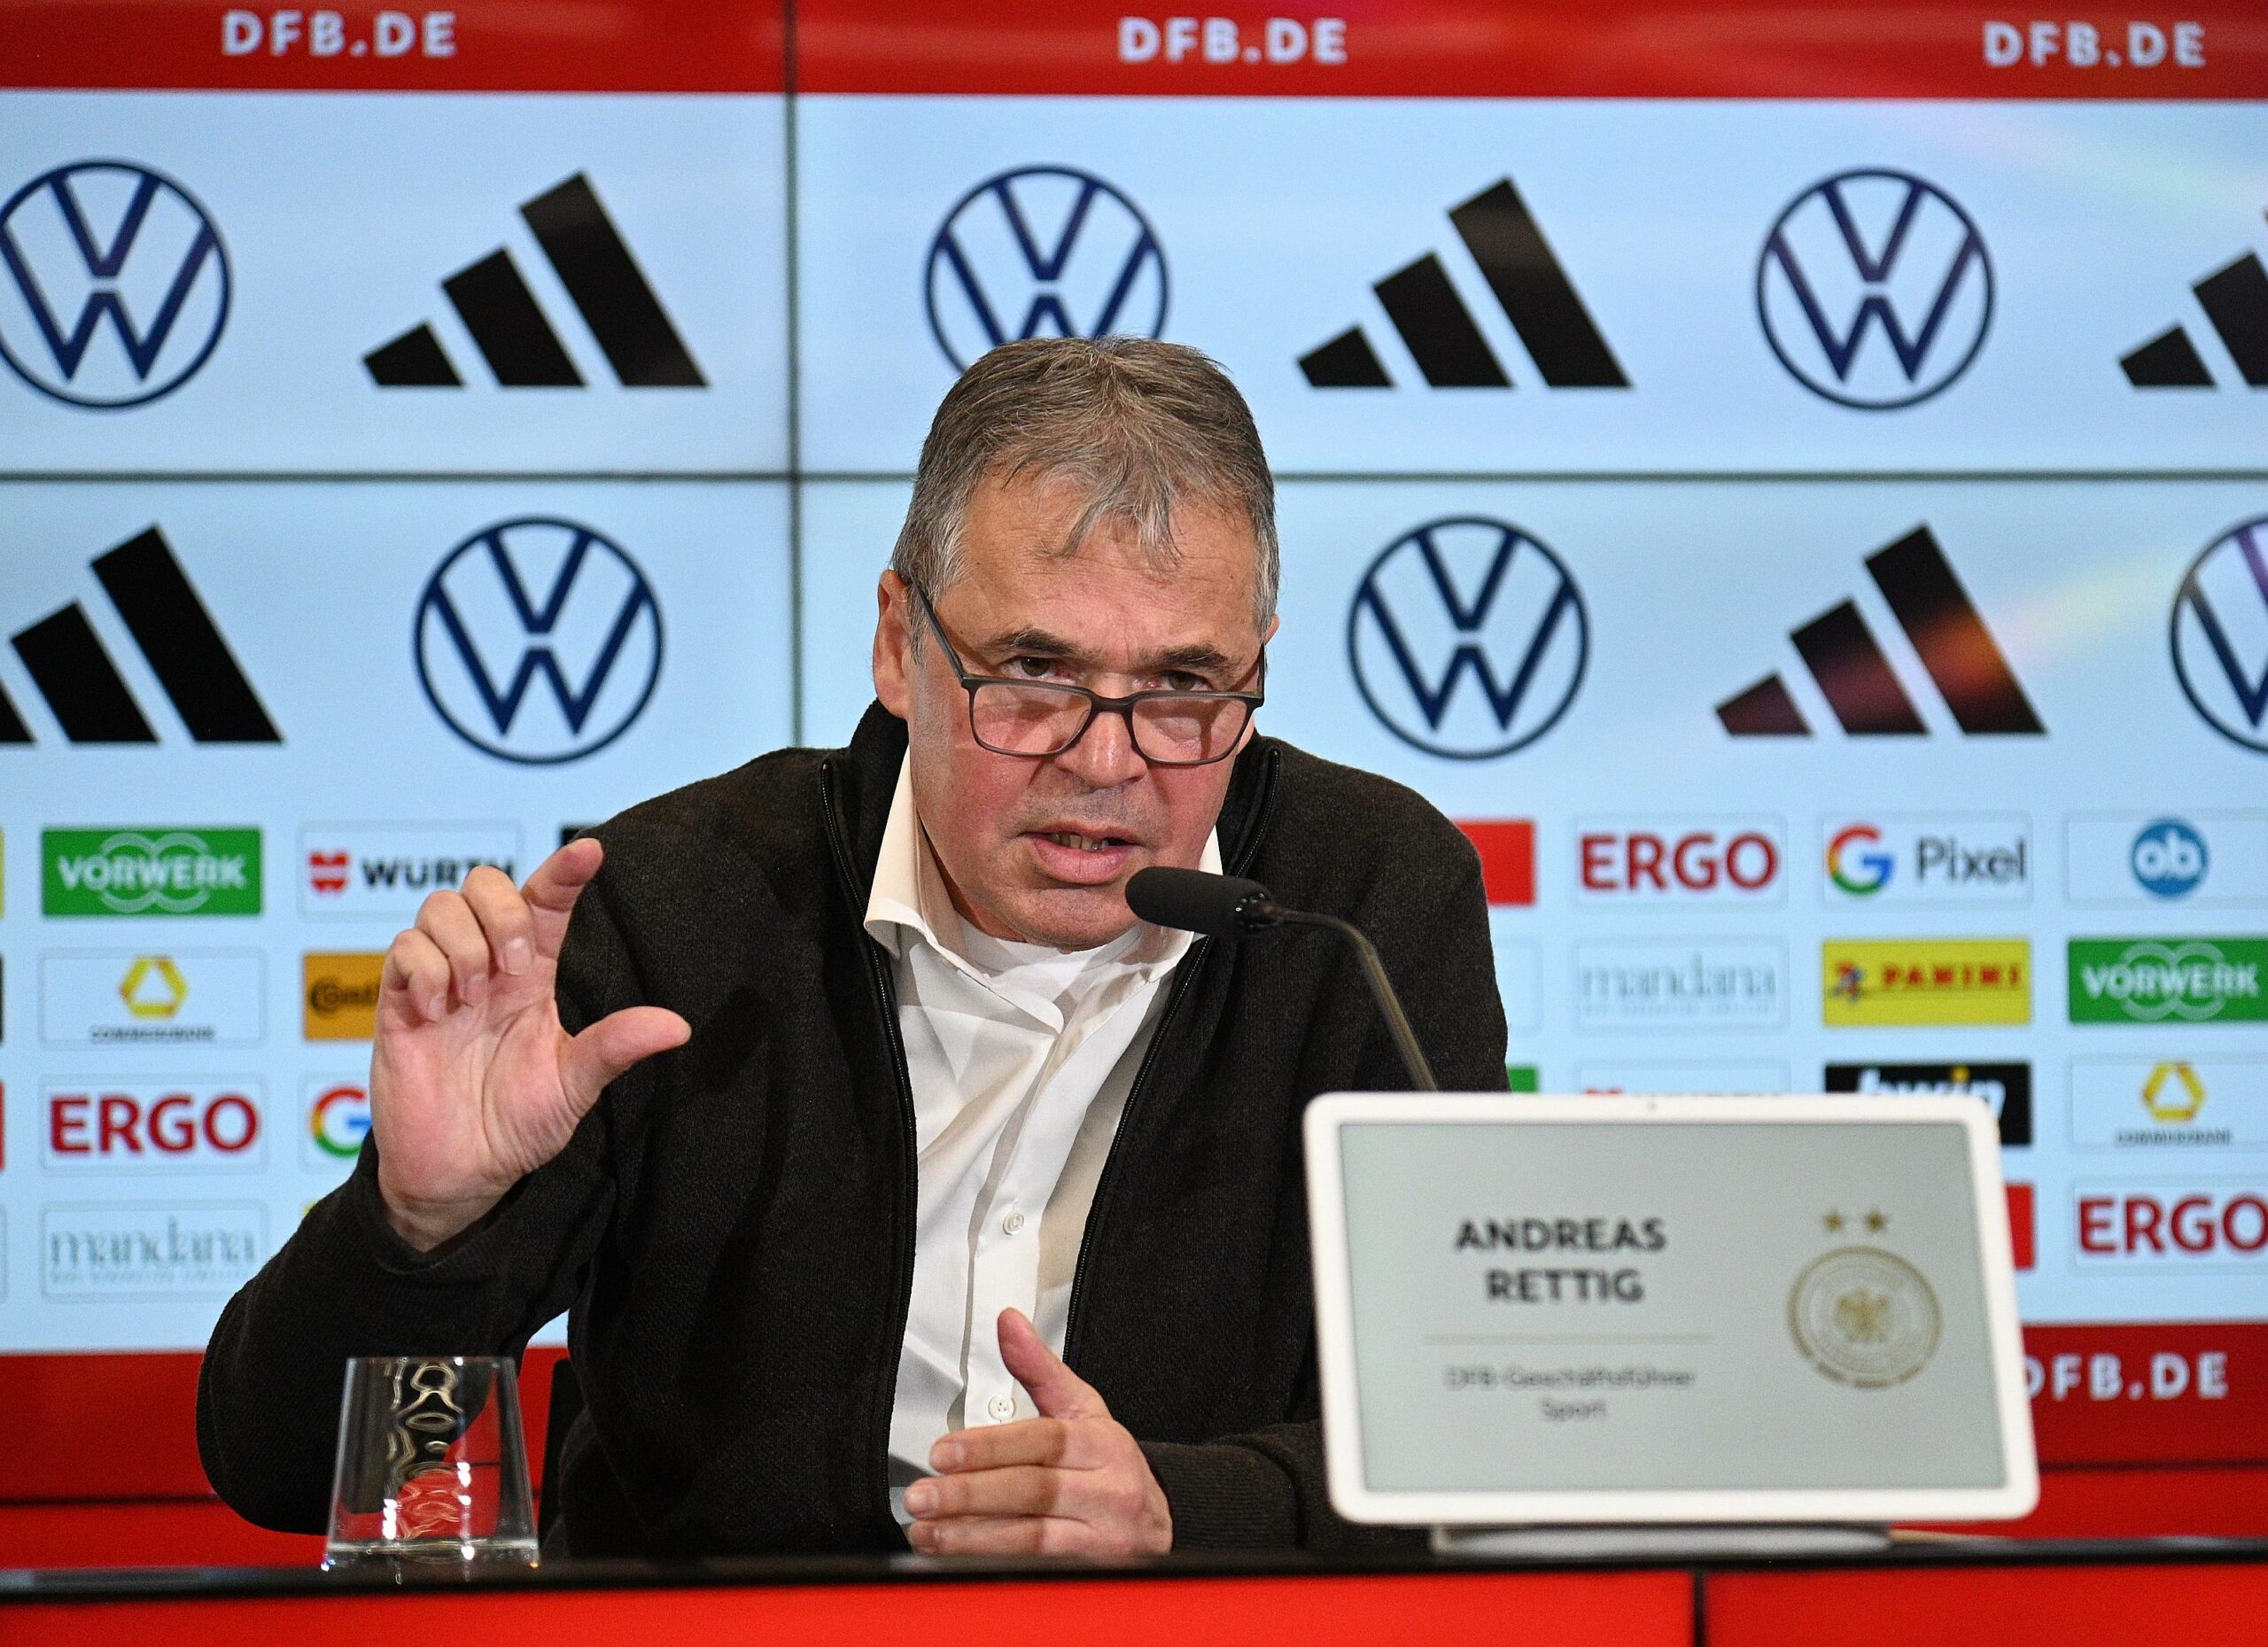 Andreas Rettig bei einer Pressekonferenz des DFB.